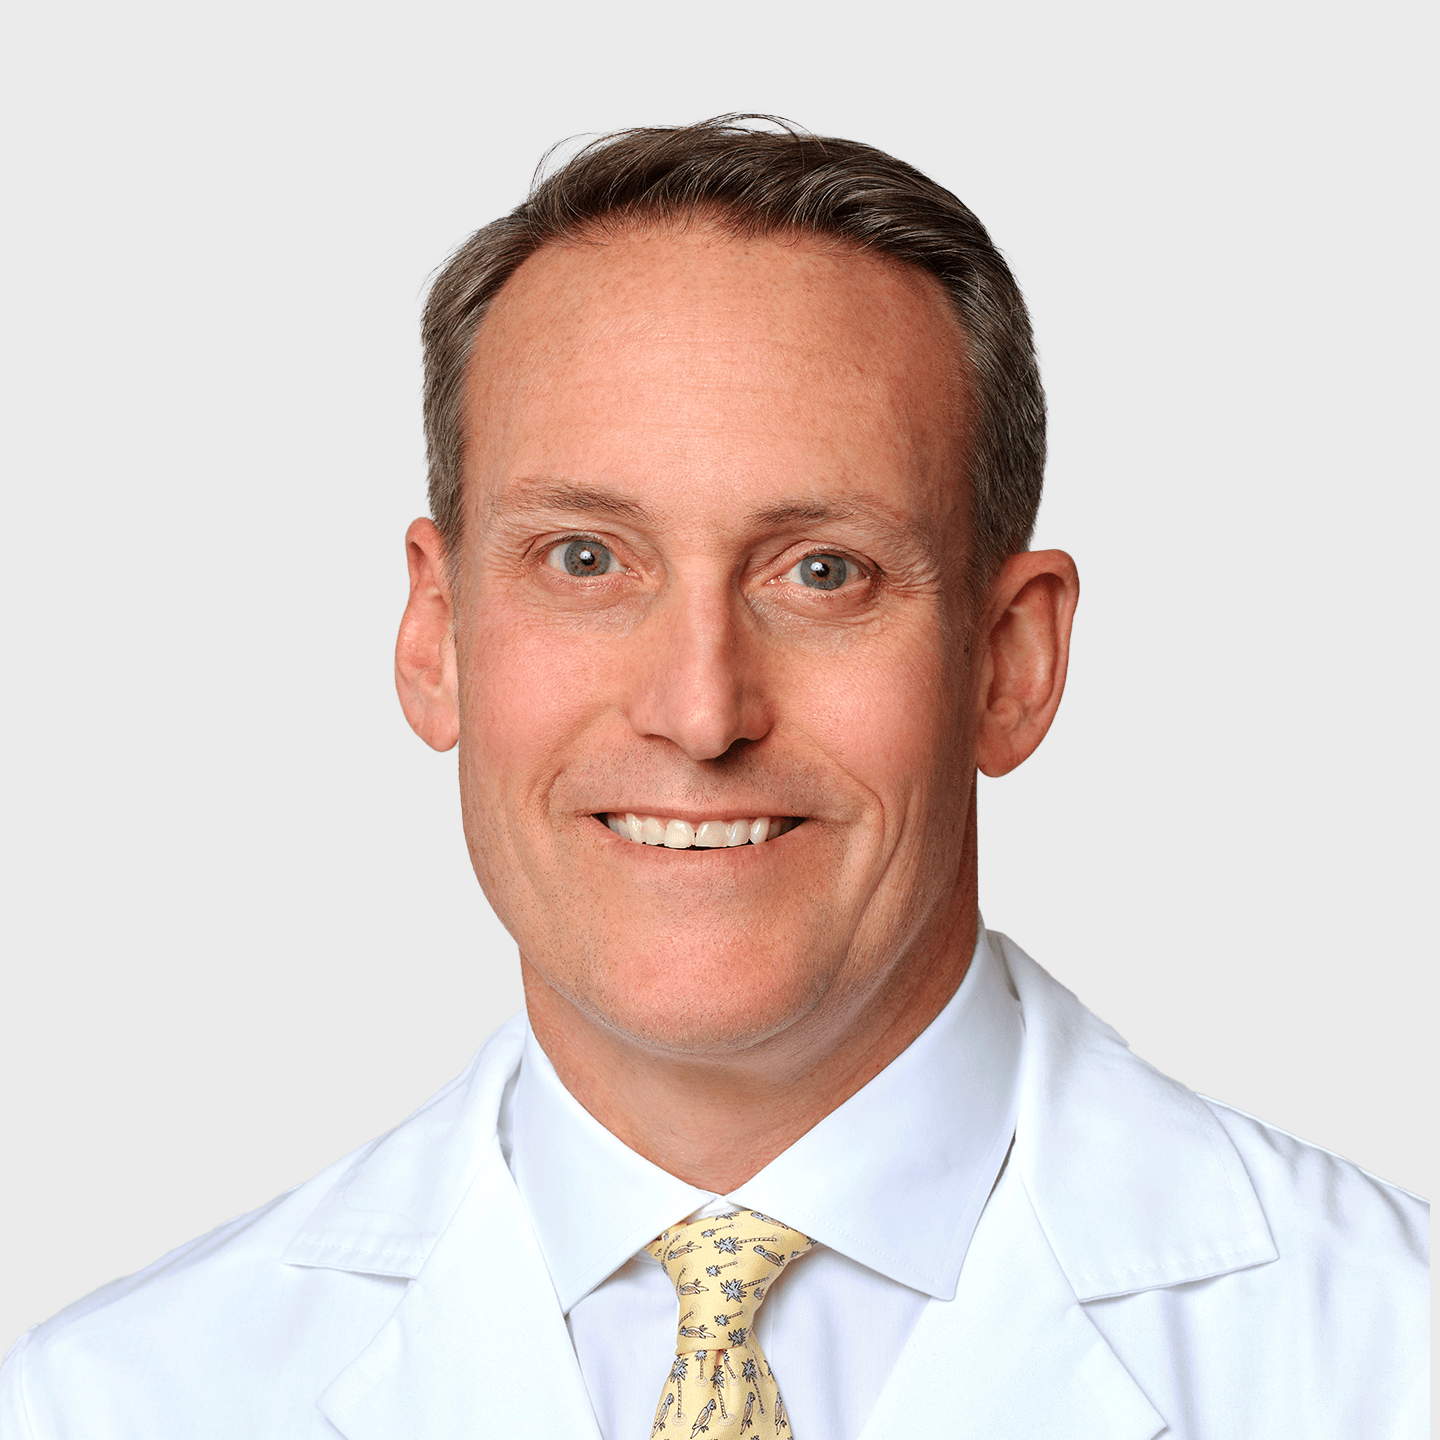 Physician Spotlight on Dr. David Prybyla